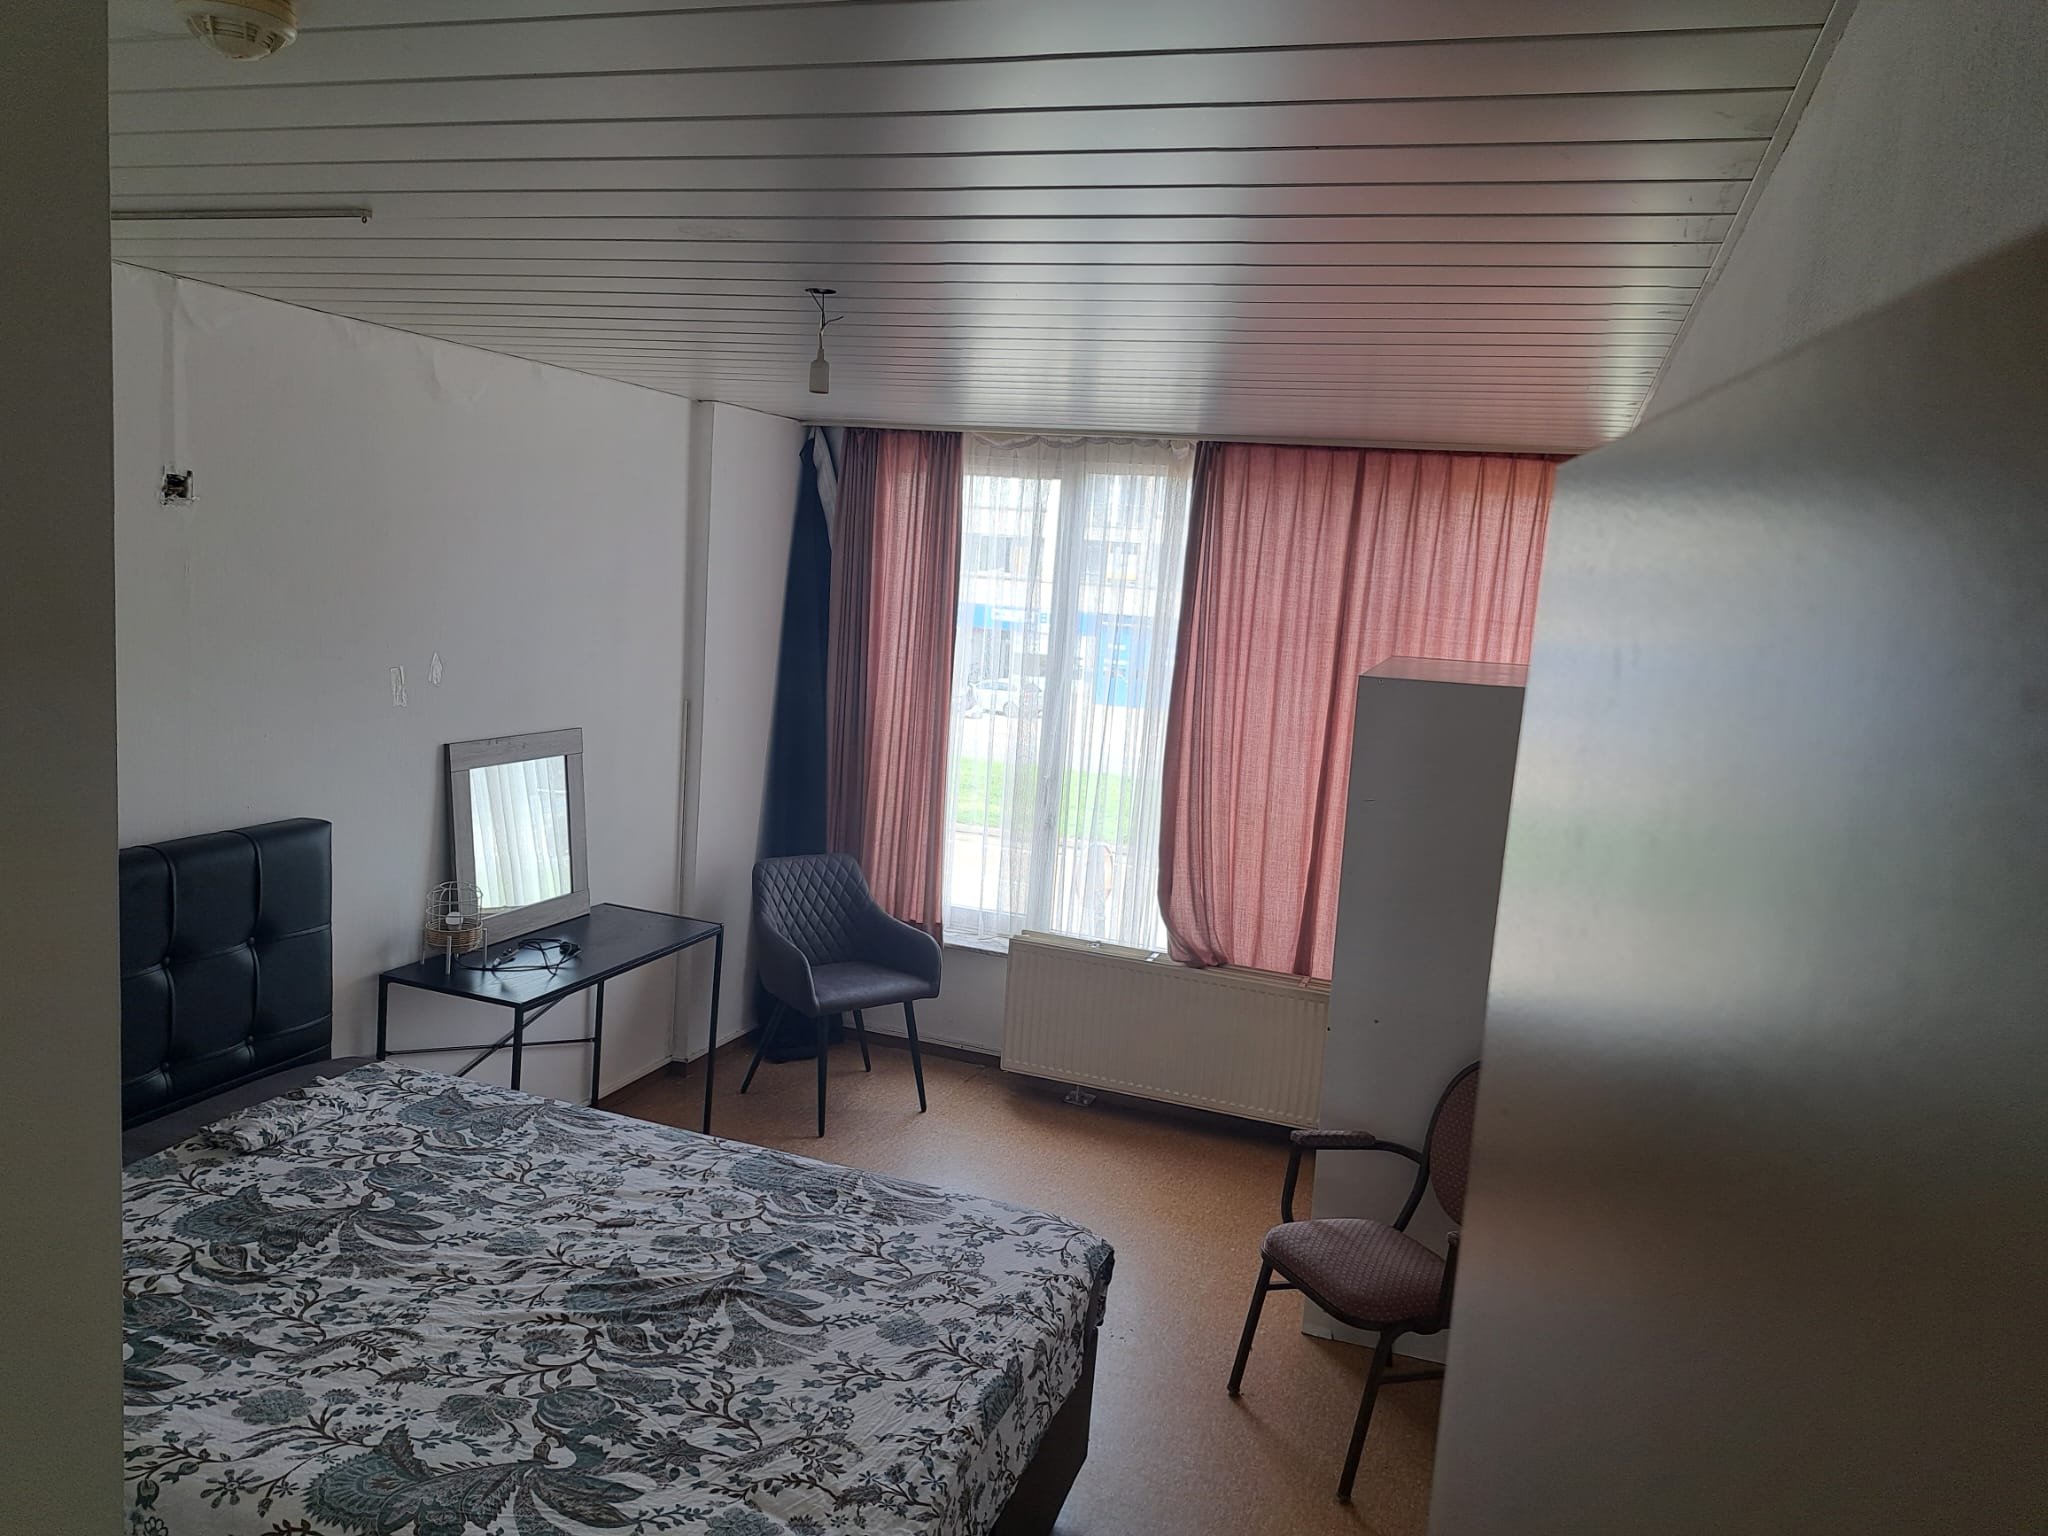 Apartment for rent in Deurne, Antwerp. room 1